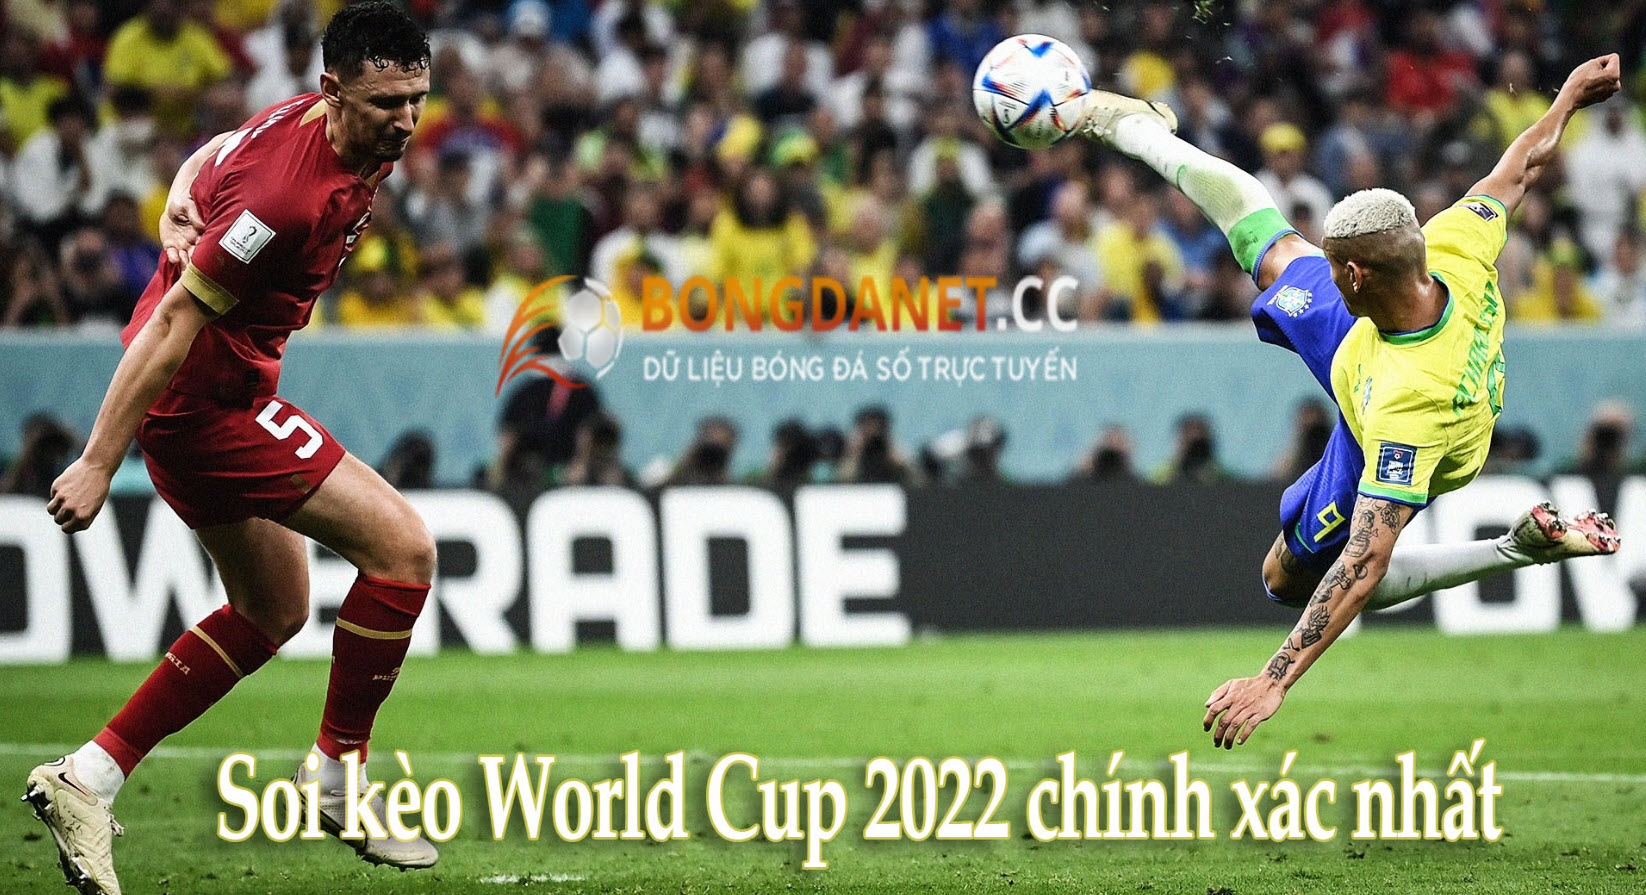 Soi kèo World Cup 2022 chính xác nhất